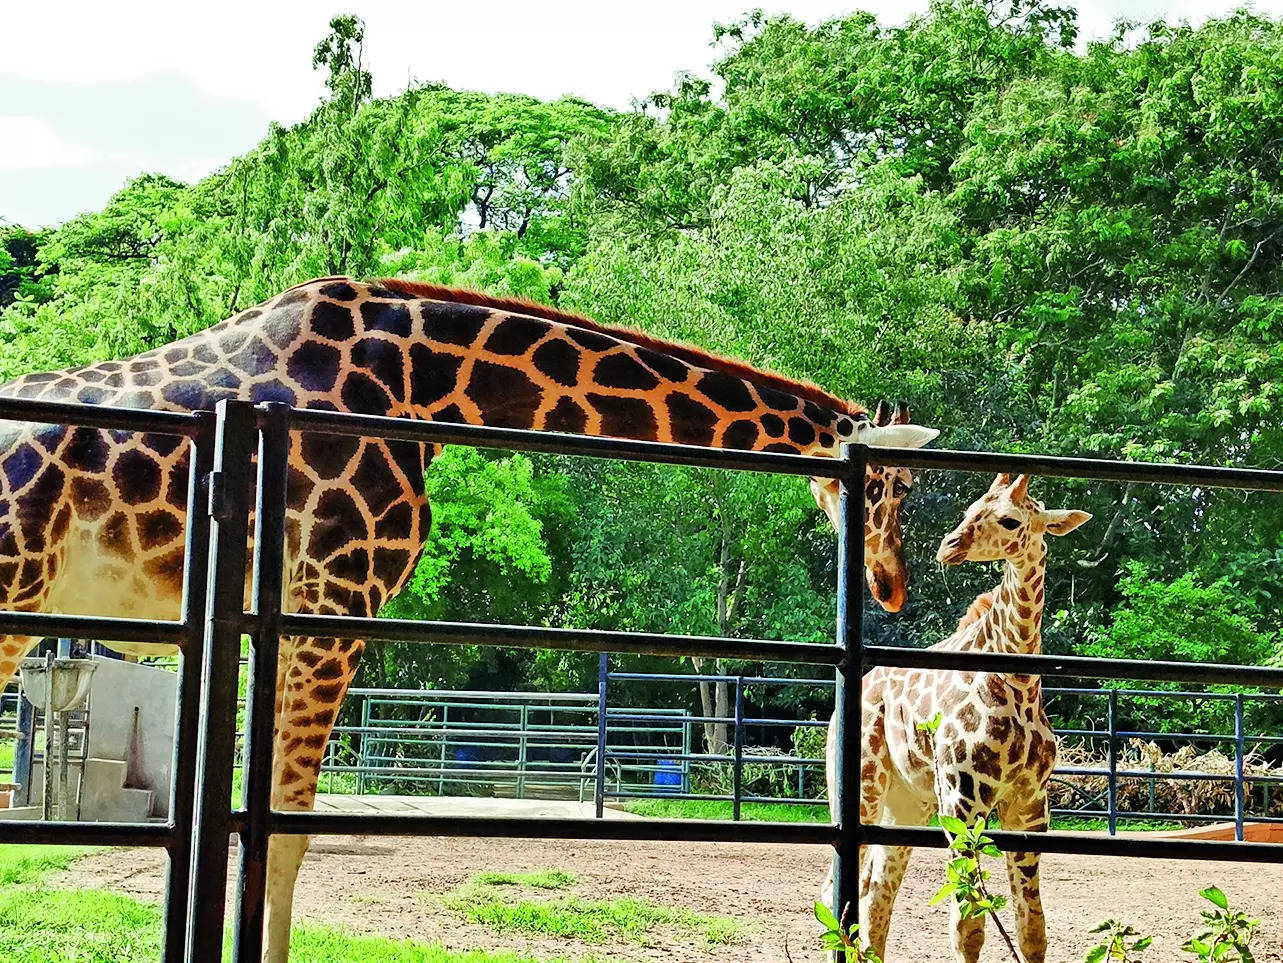 Giraffe calf is named ‘Daksha’